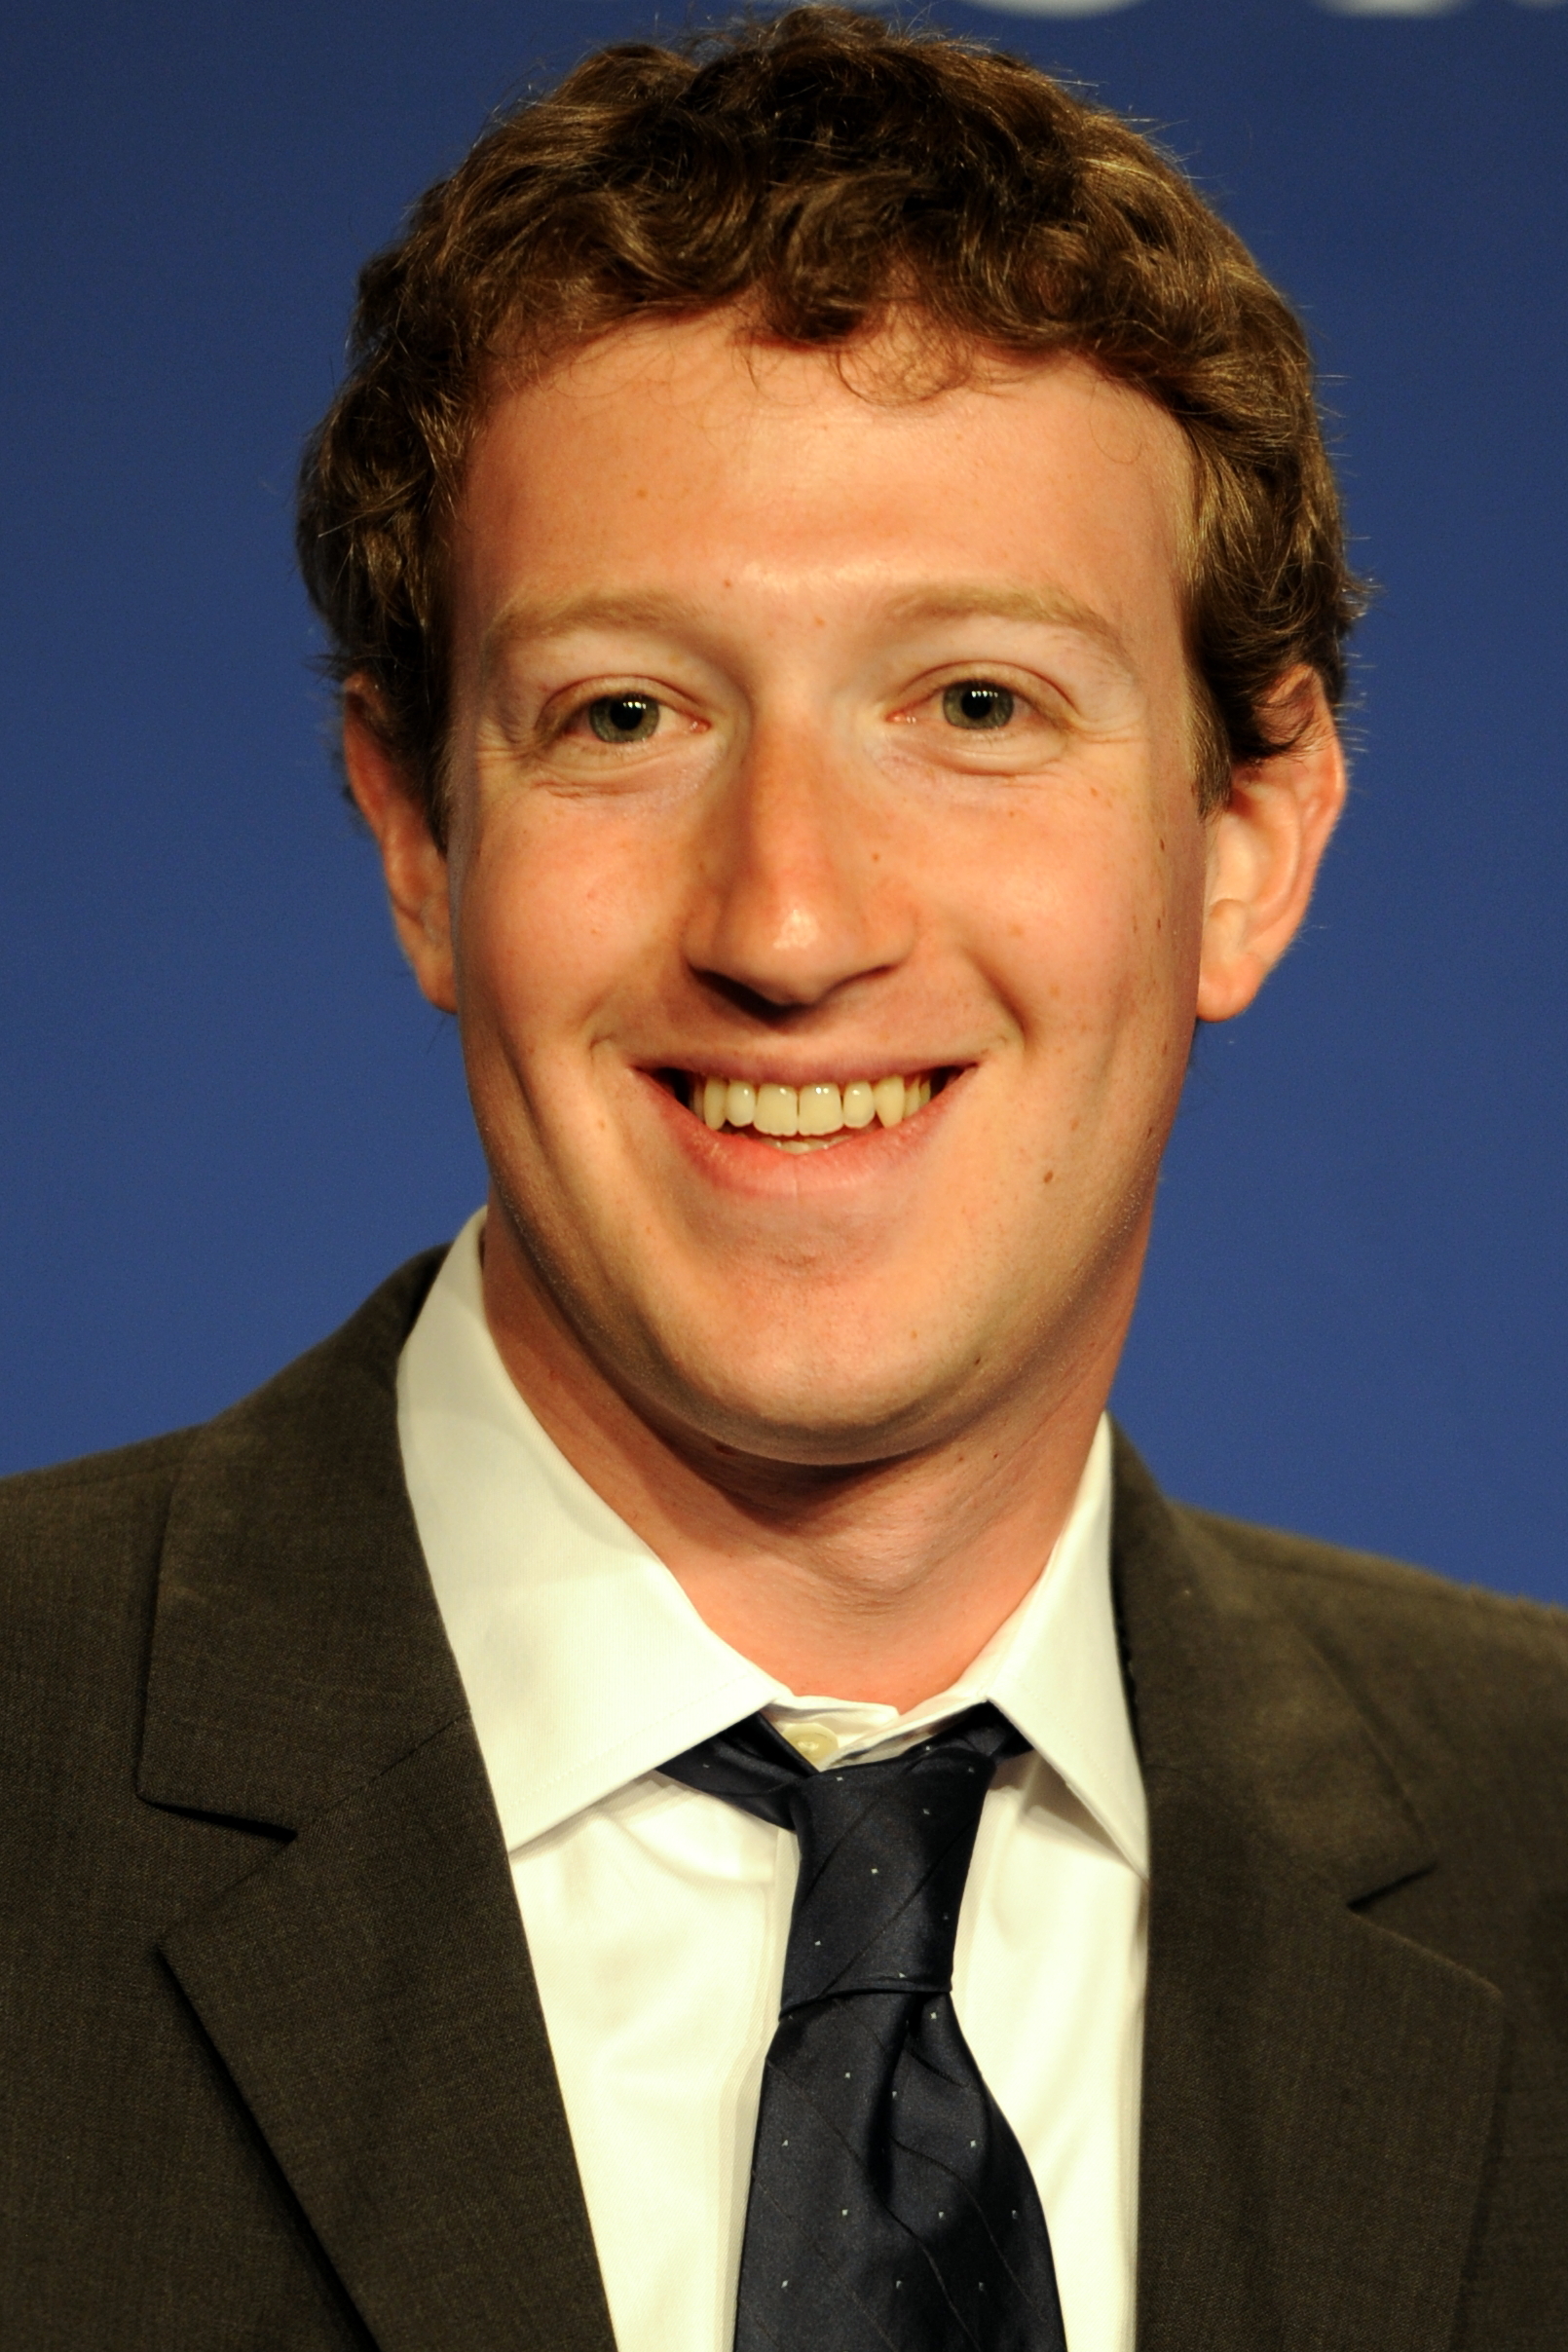 Facebook eliminou mais de 1 bilhão de contas falsas em 2018, diz Mark Zuckerberg